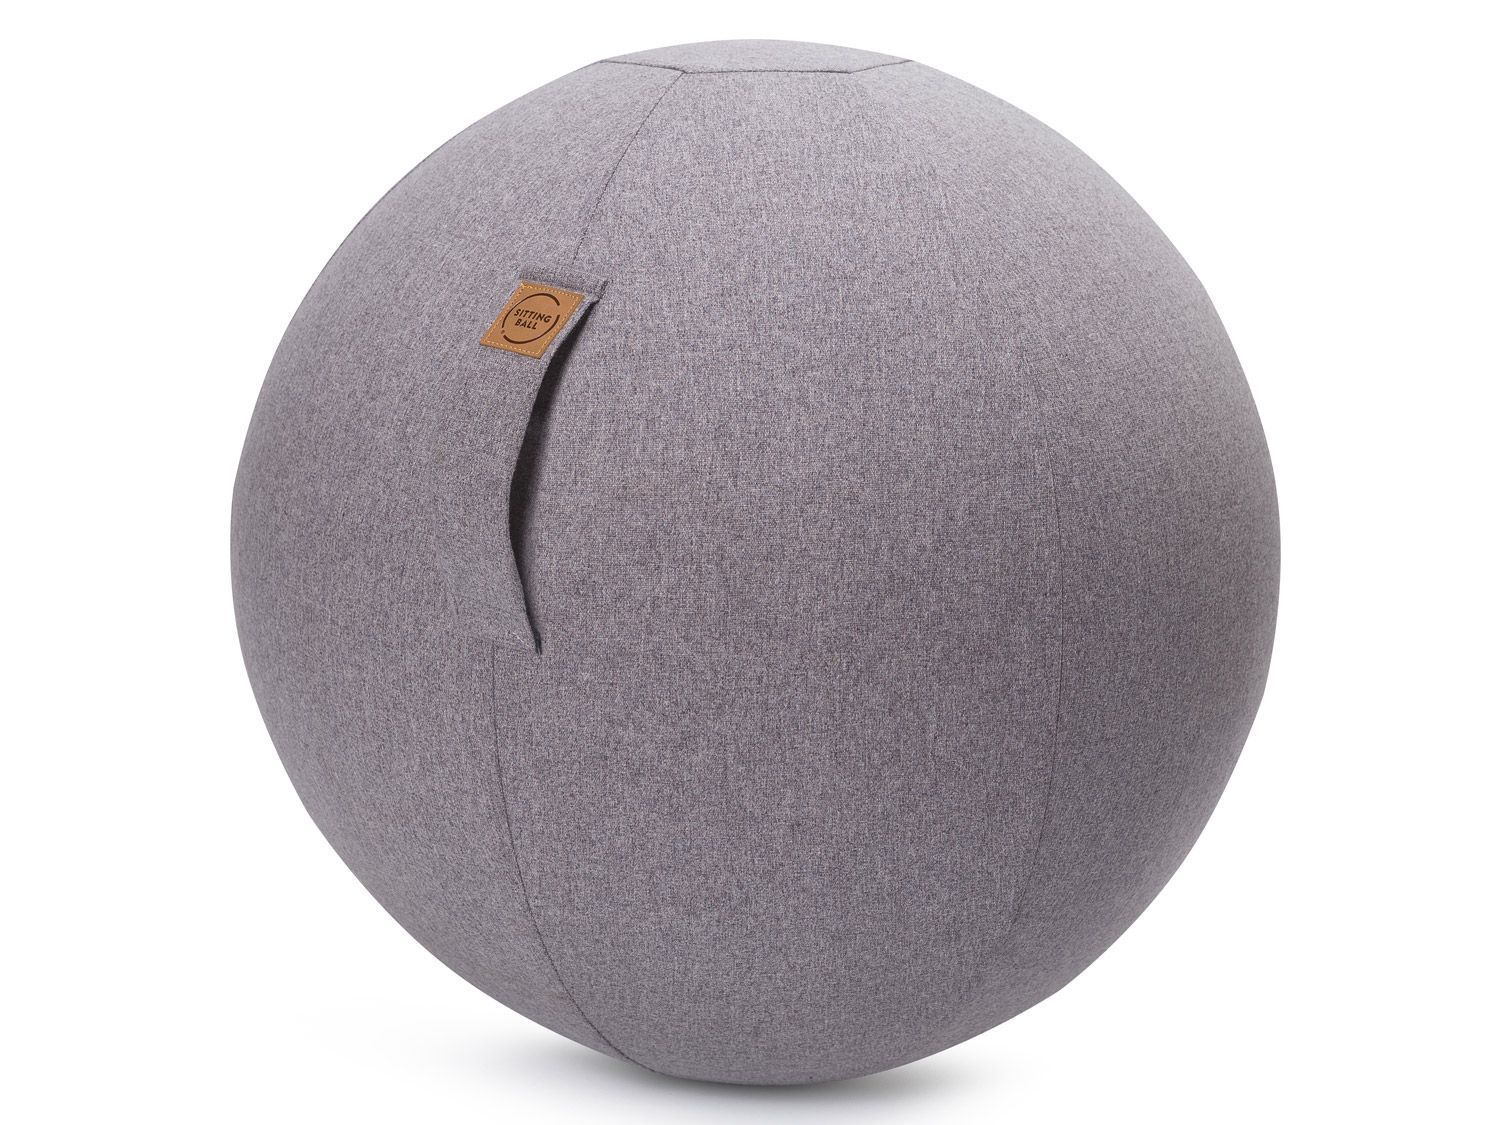 SITTING POINT Gym ball FELT, avec housse amovible et poignée avec velcro (gris)